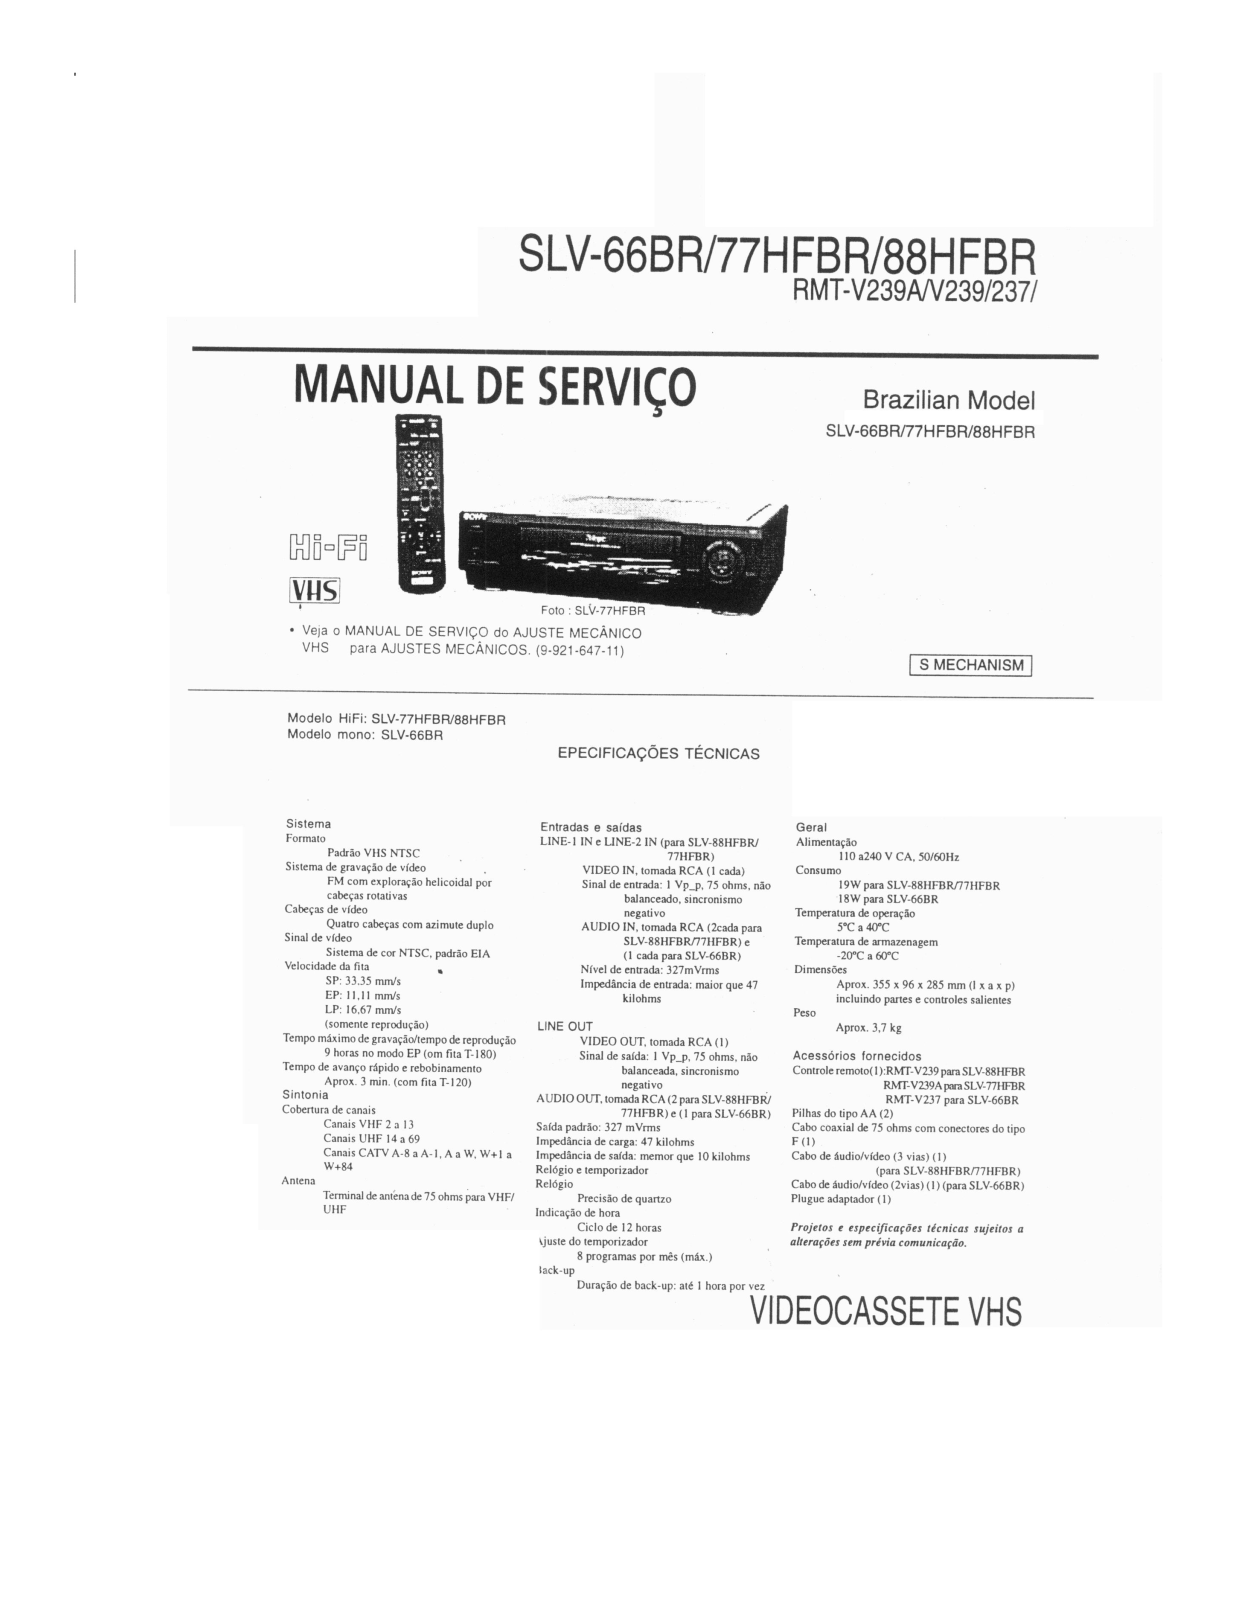 SONY SLV-66BR, SLV-77HFBR, SLV-88HFBR Service Manual